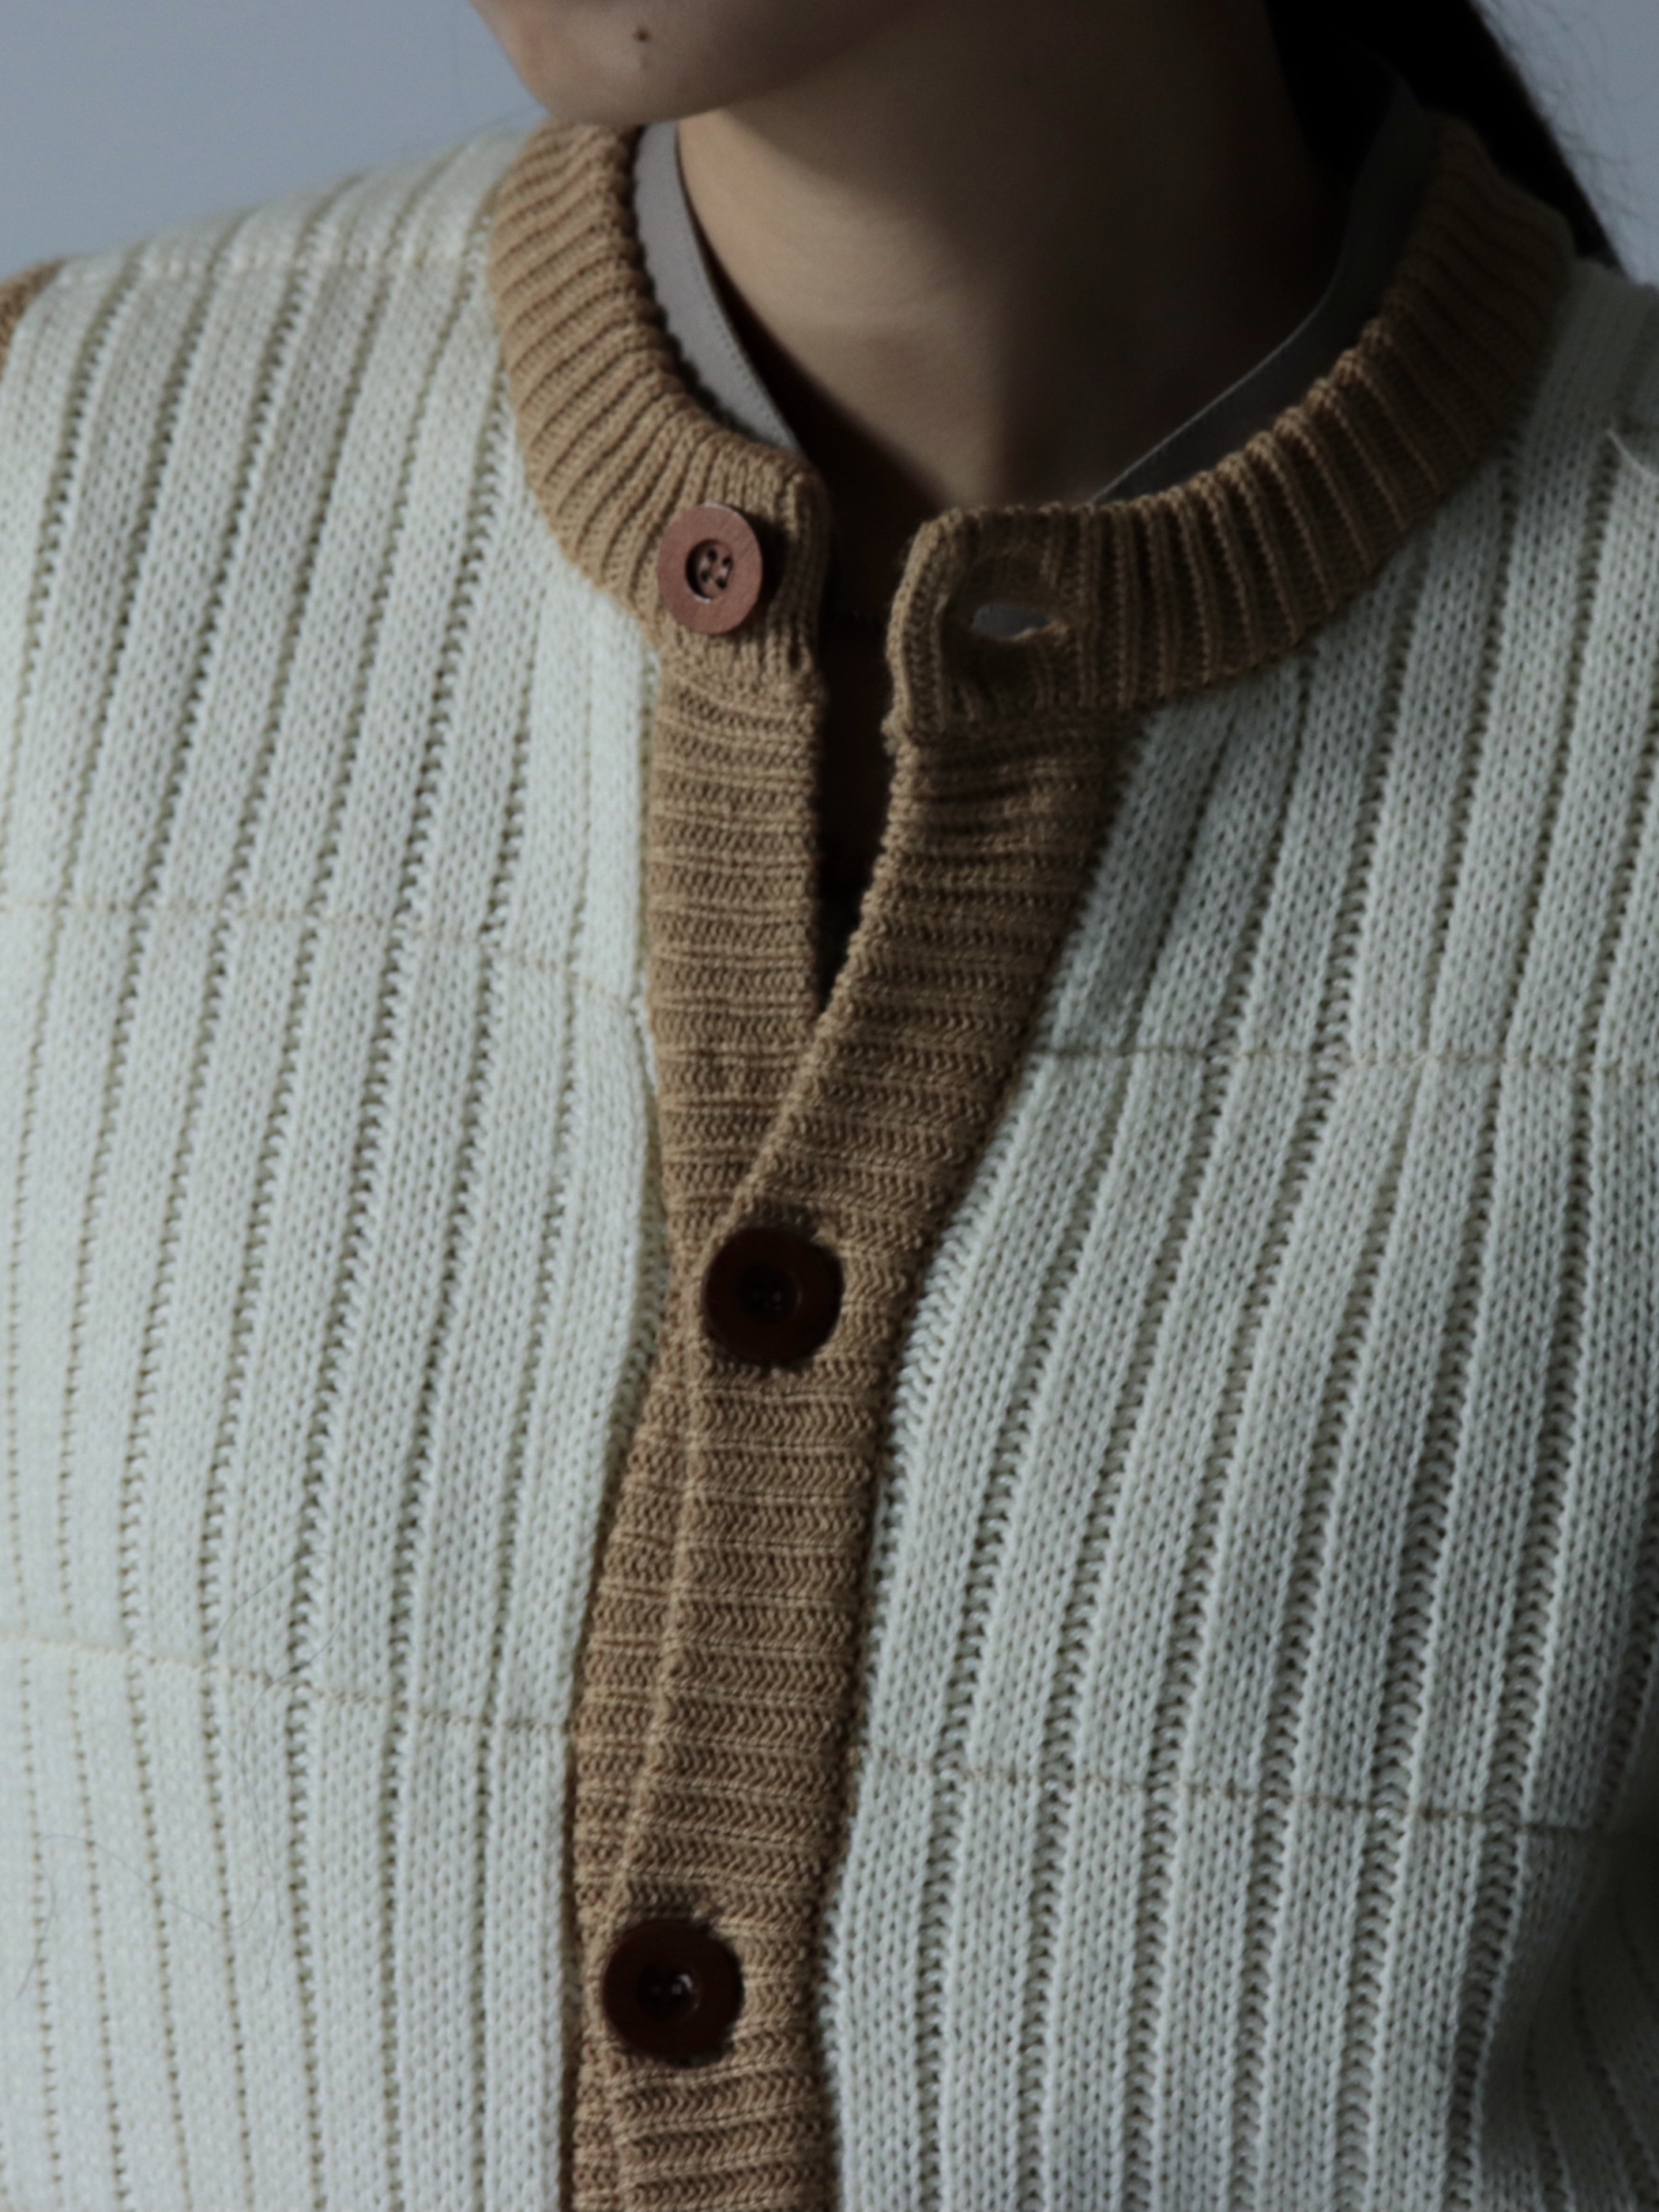 Acryl knit vest